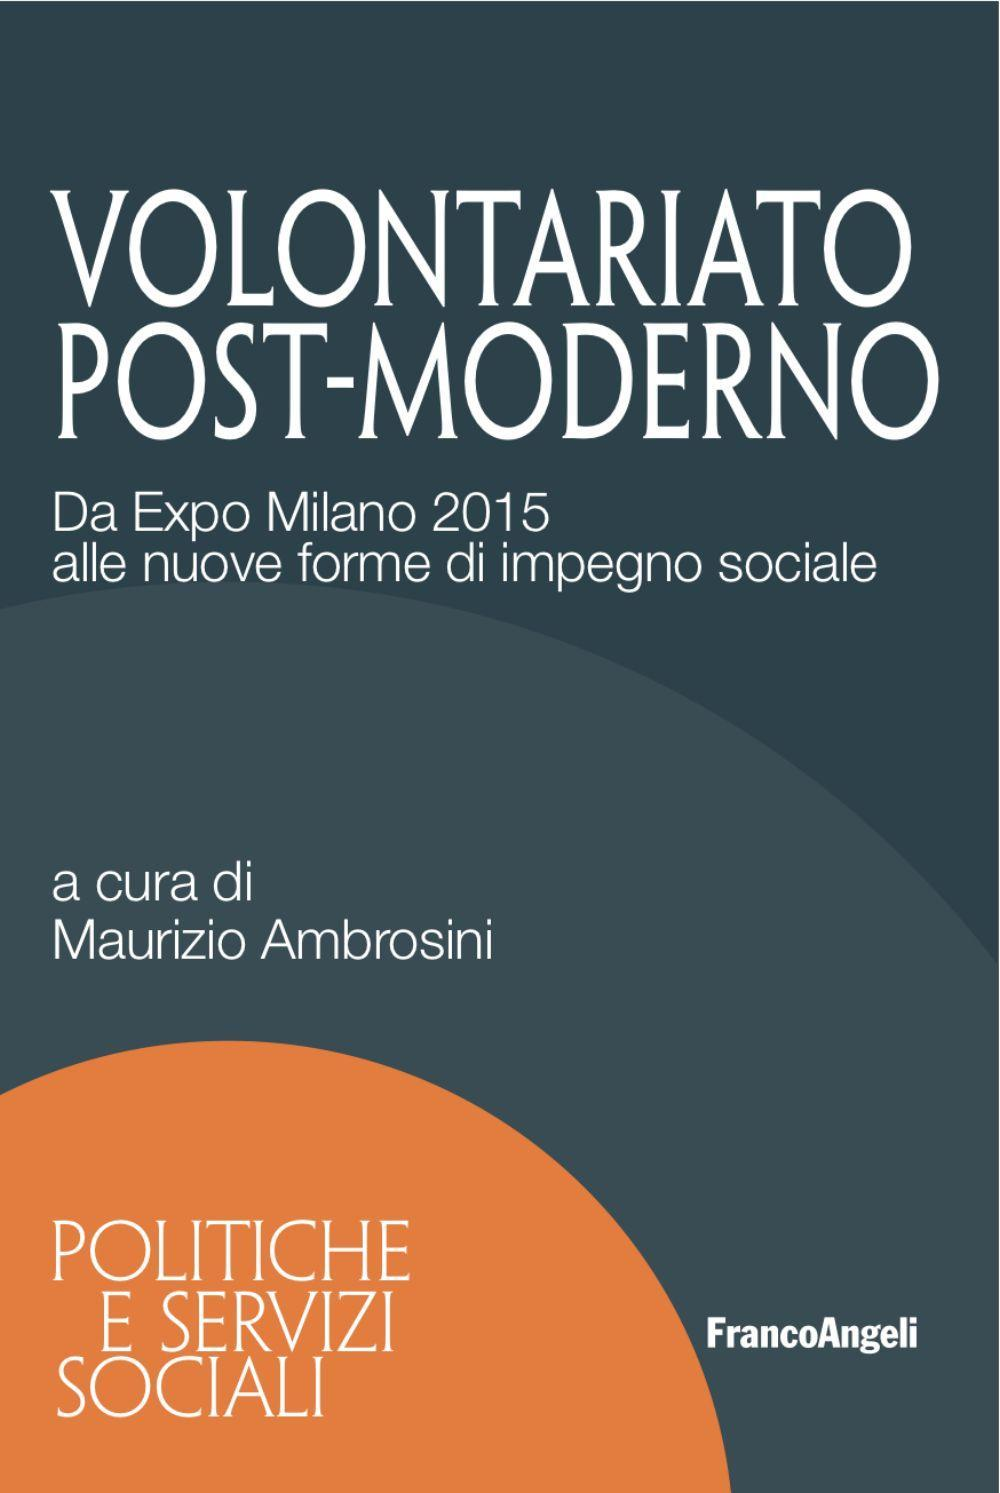 Image of Volontariato post-moderno. Da Expo Milano 2015 alle nuove forme di impegno sociale